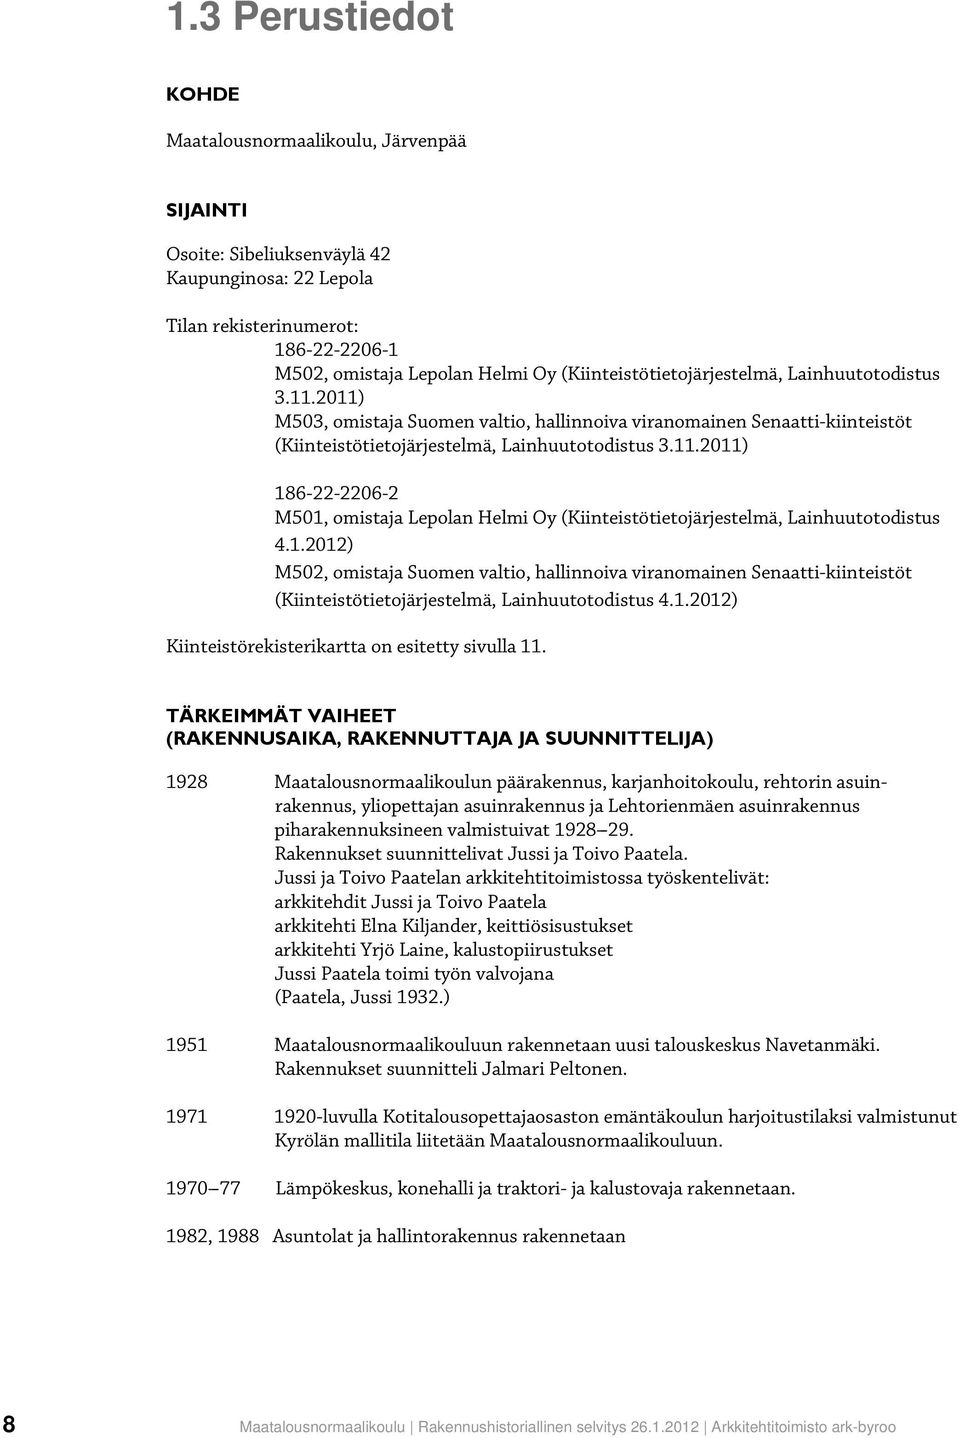 1.2012) M502, omistaja Suomen valtio, hallinnoiva viranomainen Senaatti-kiinteistöt (Kiinteistötietojärjestelmä, Lainhuutotodistus 4.1.2012) Kiinteistörekisterikartta on esitetty sivulla 11.